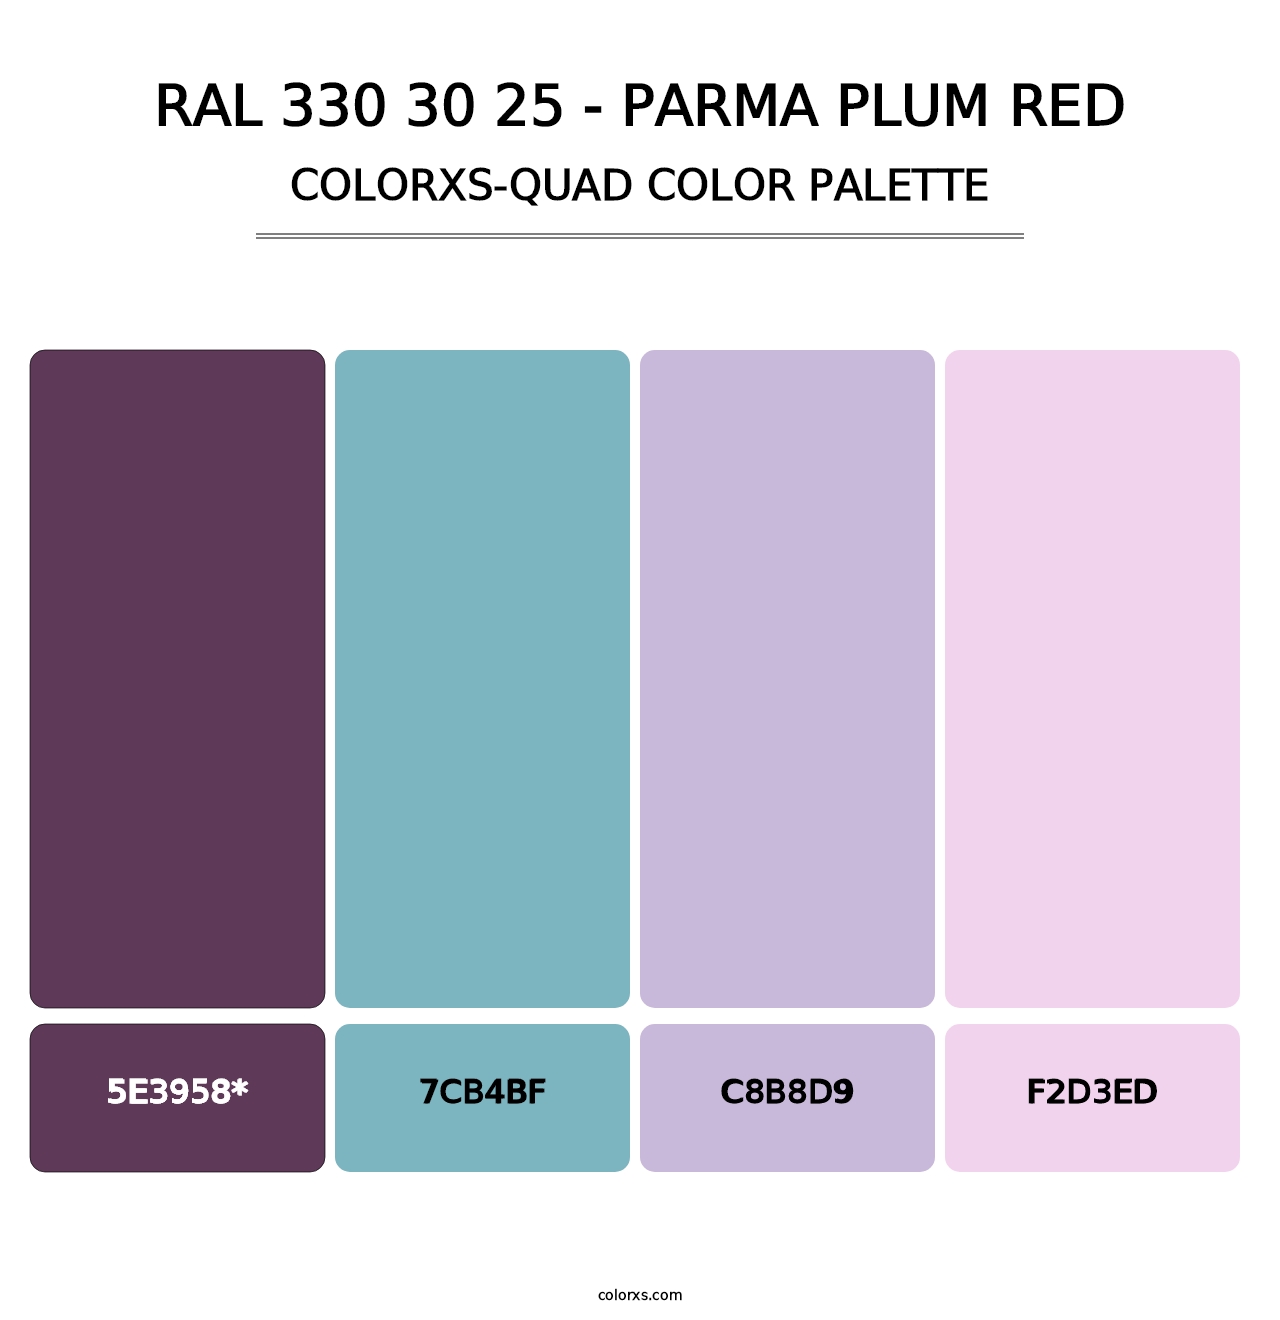 RAL 330 30 25 - Parma Plum Red - Colorxs Quad Palette